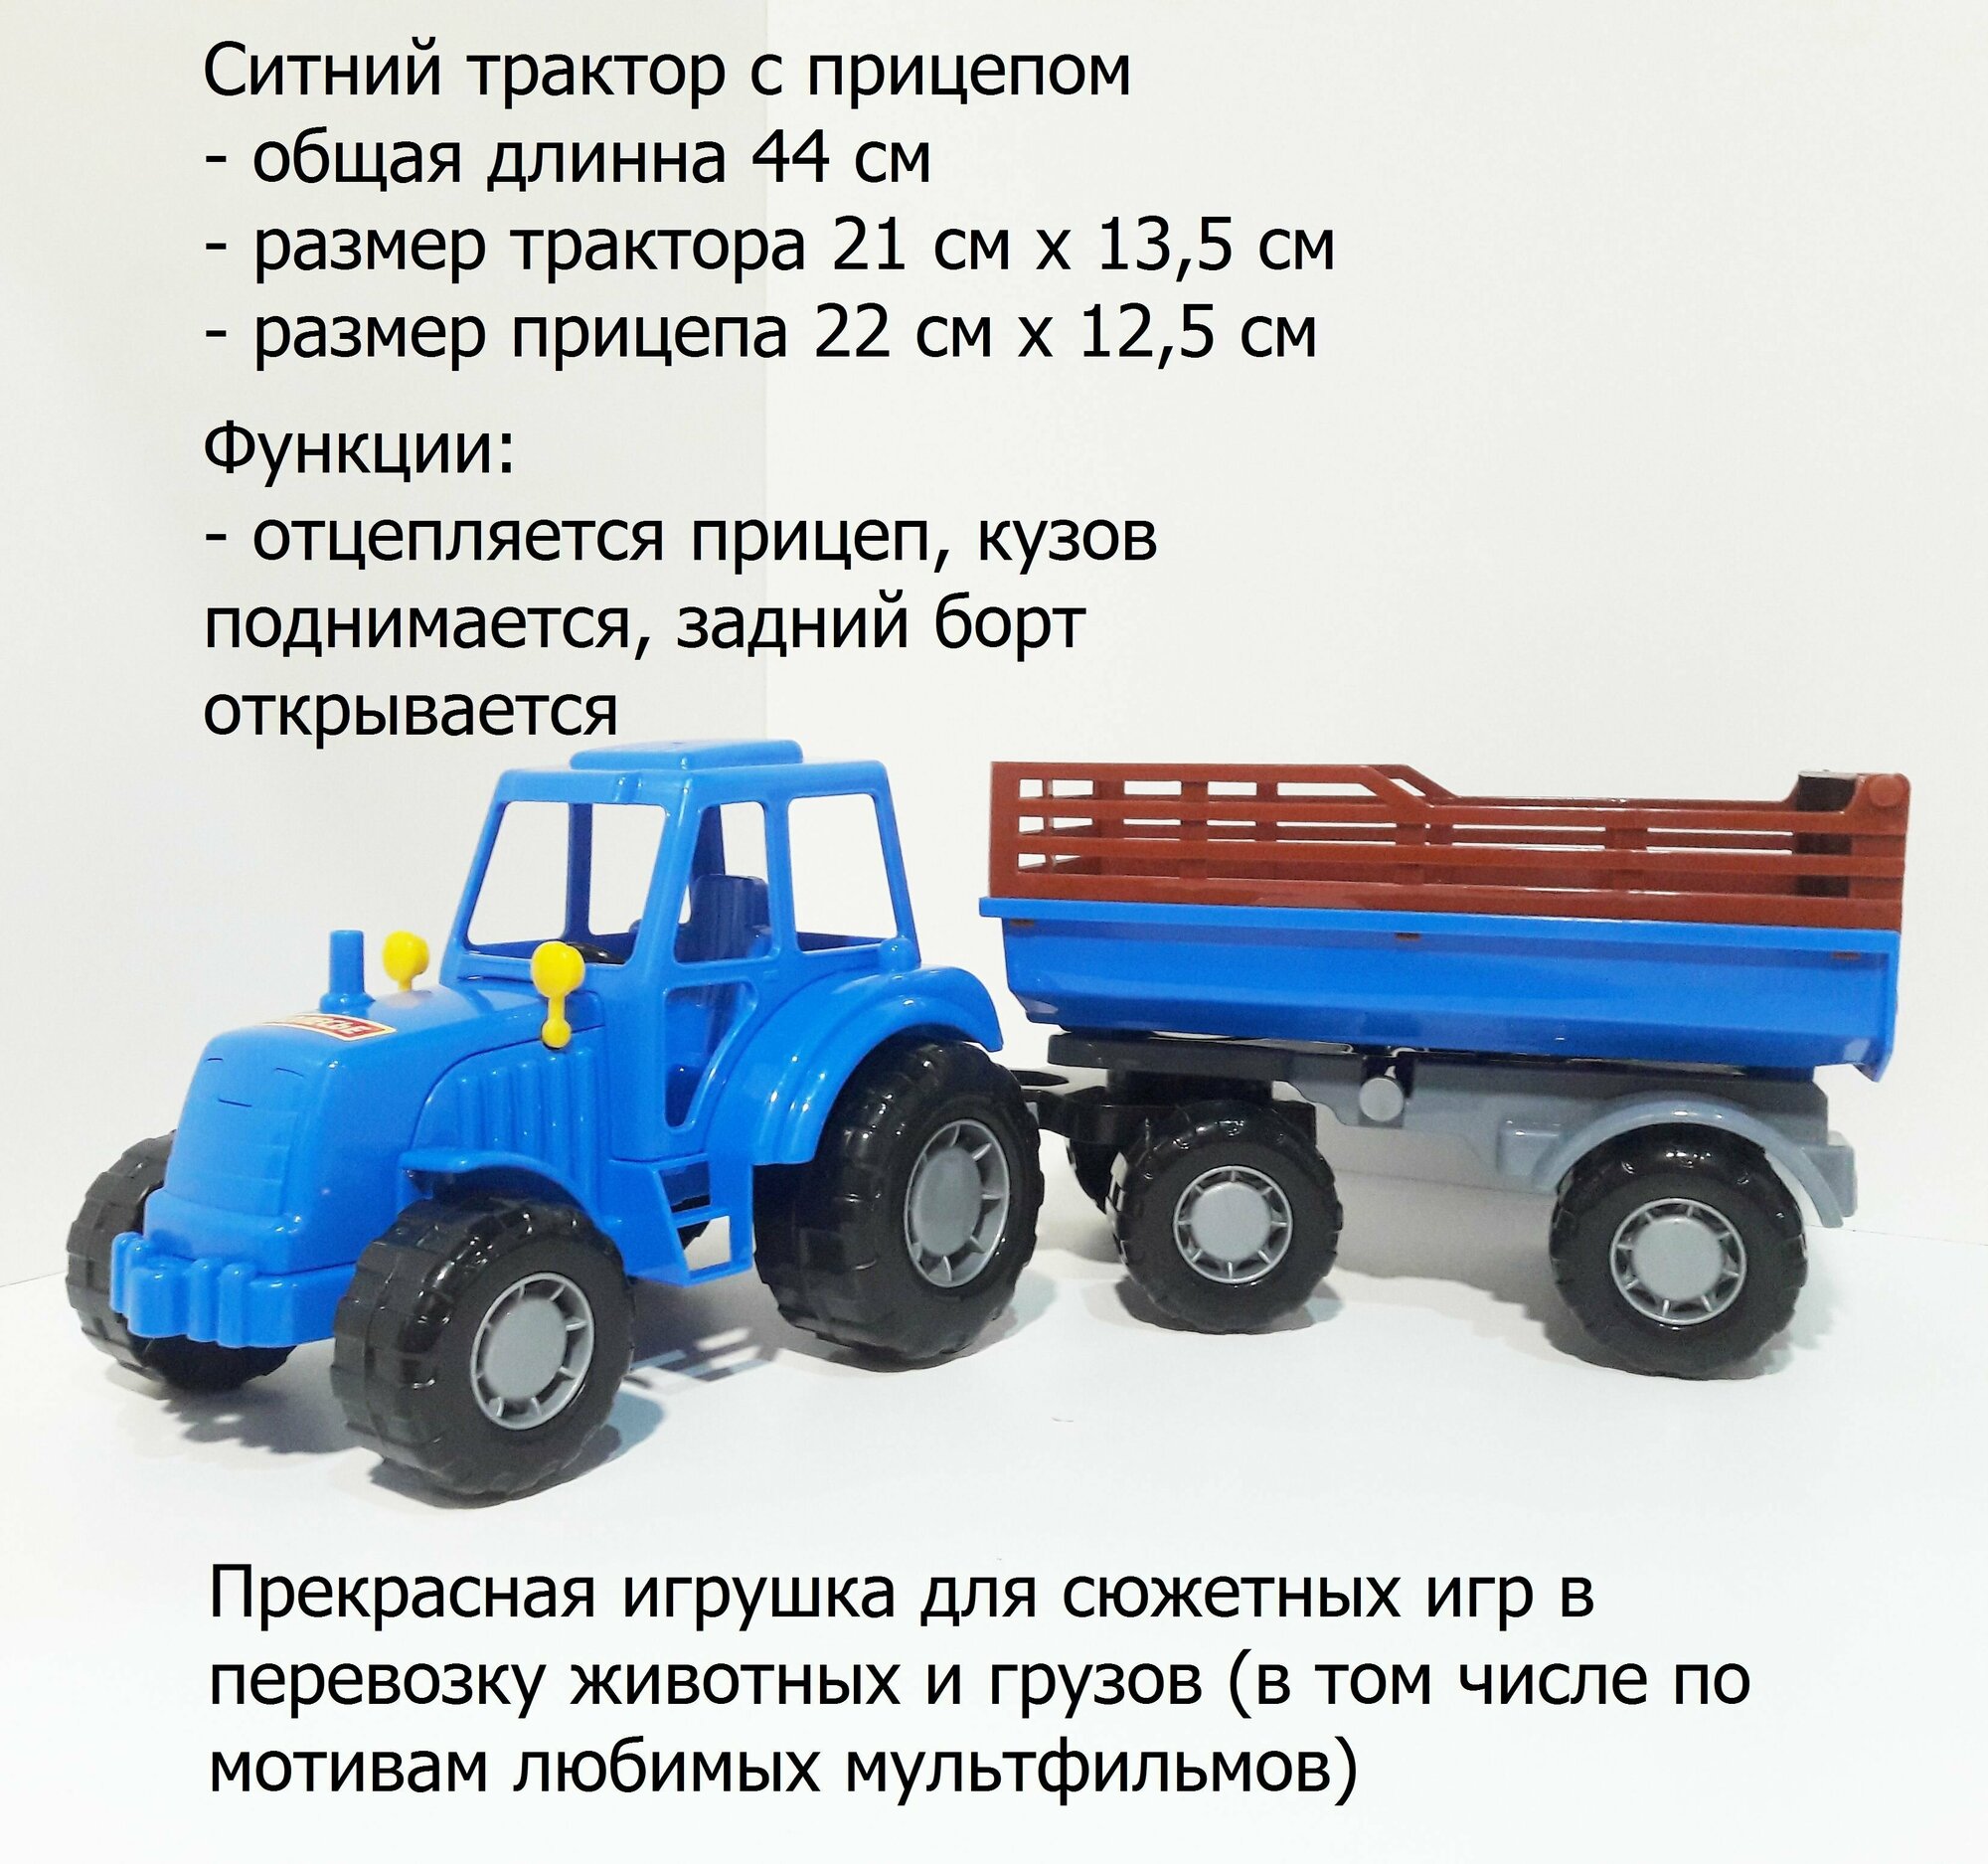 Синий трактор с прицепом (длина 44 см) для перевозки игрушечных животных и грузов